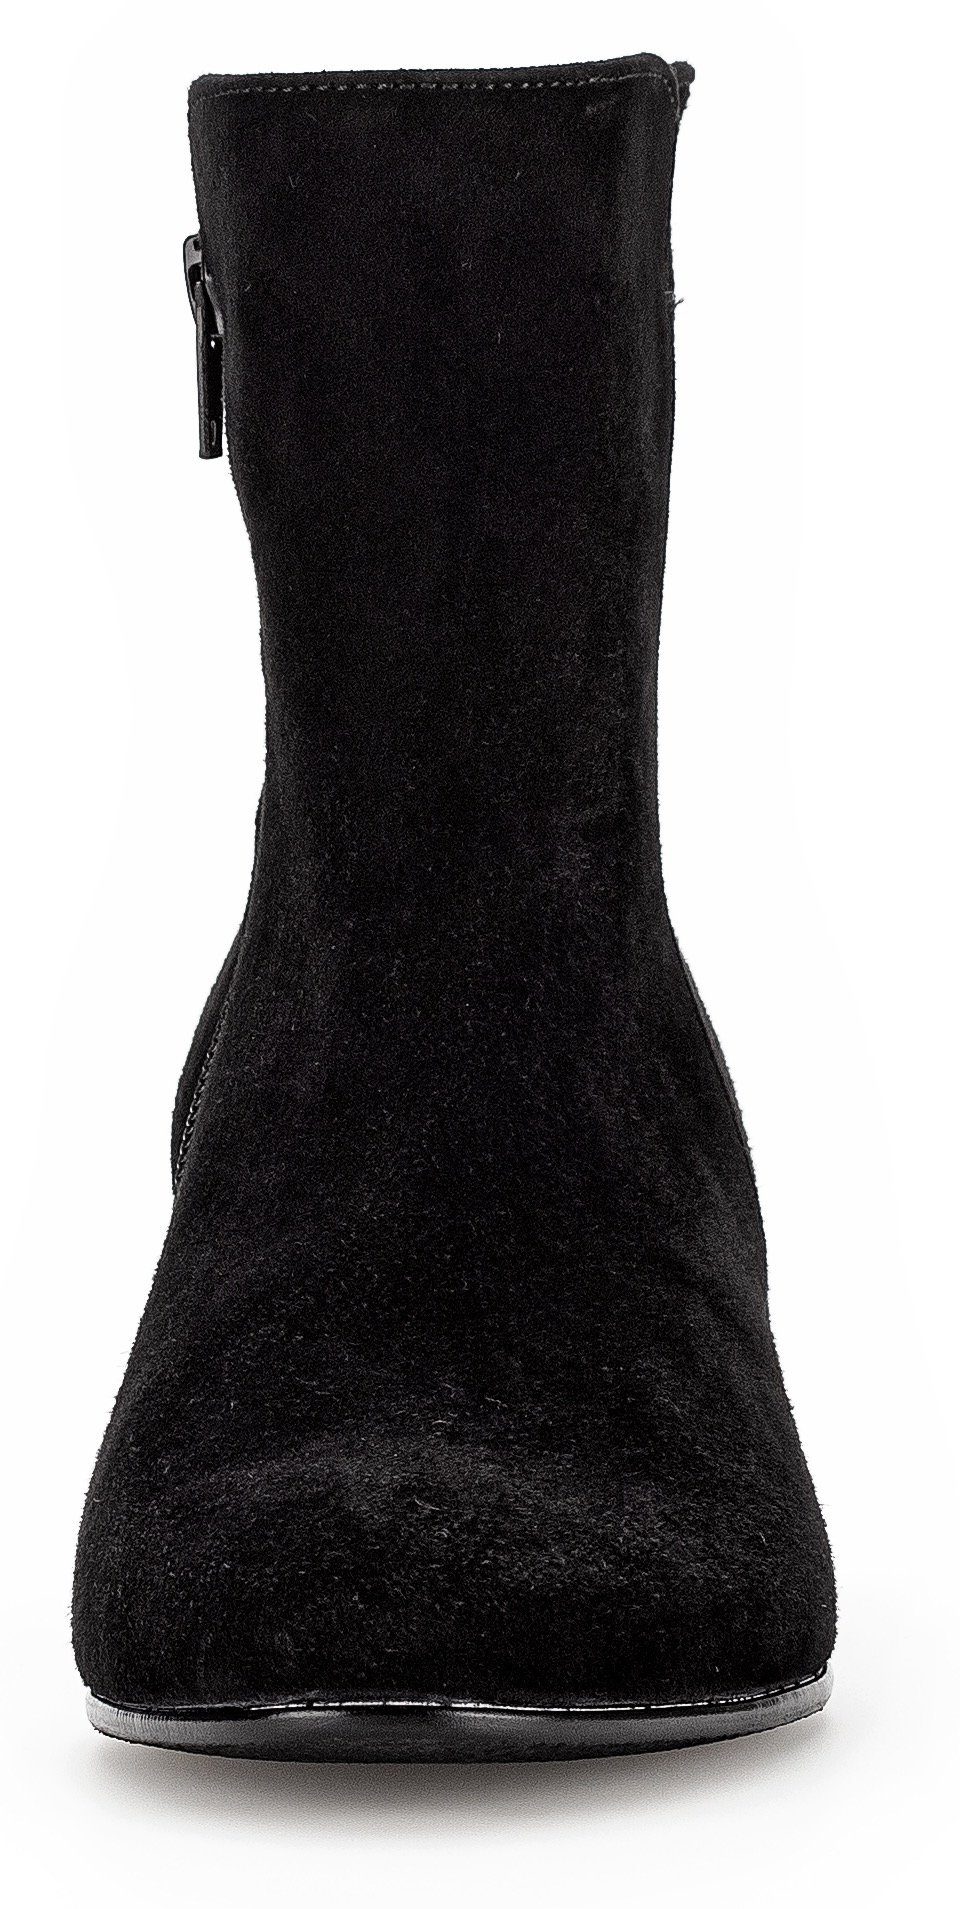 Stiefelette Gabor mit Fitting-Ausstattung Best schwarz